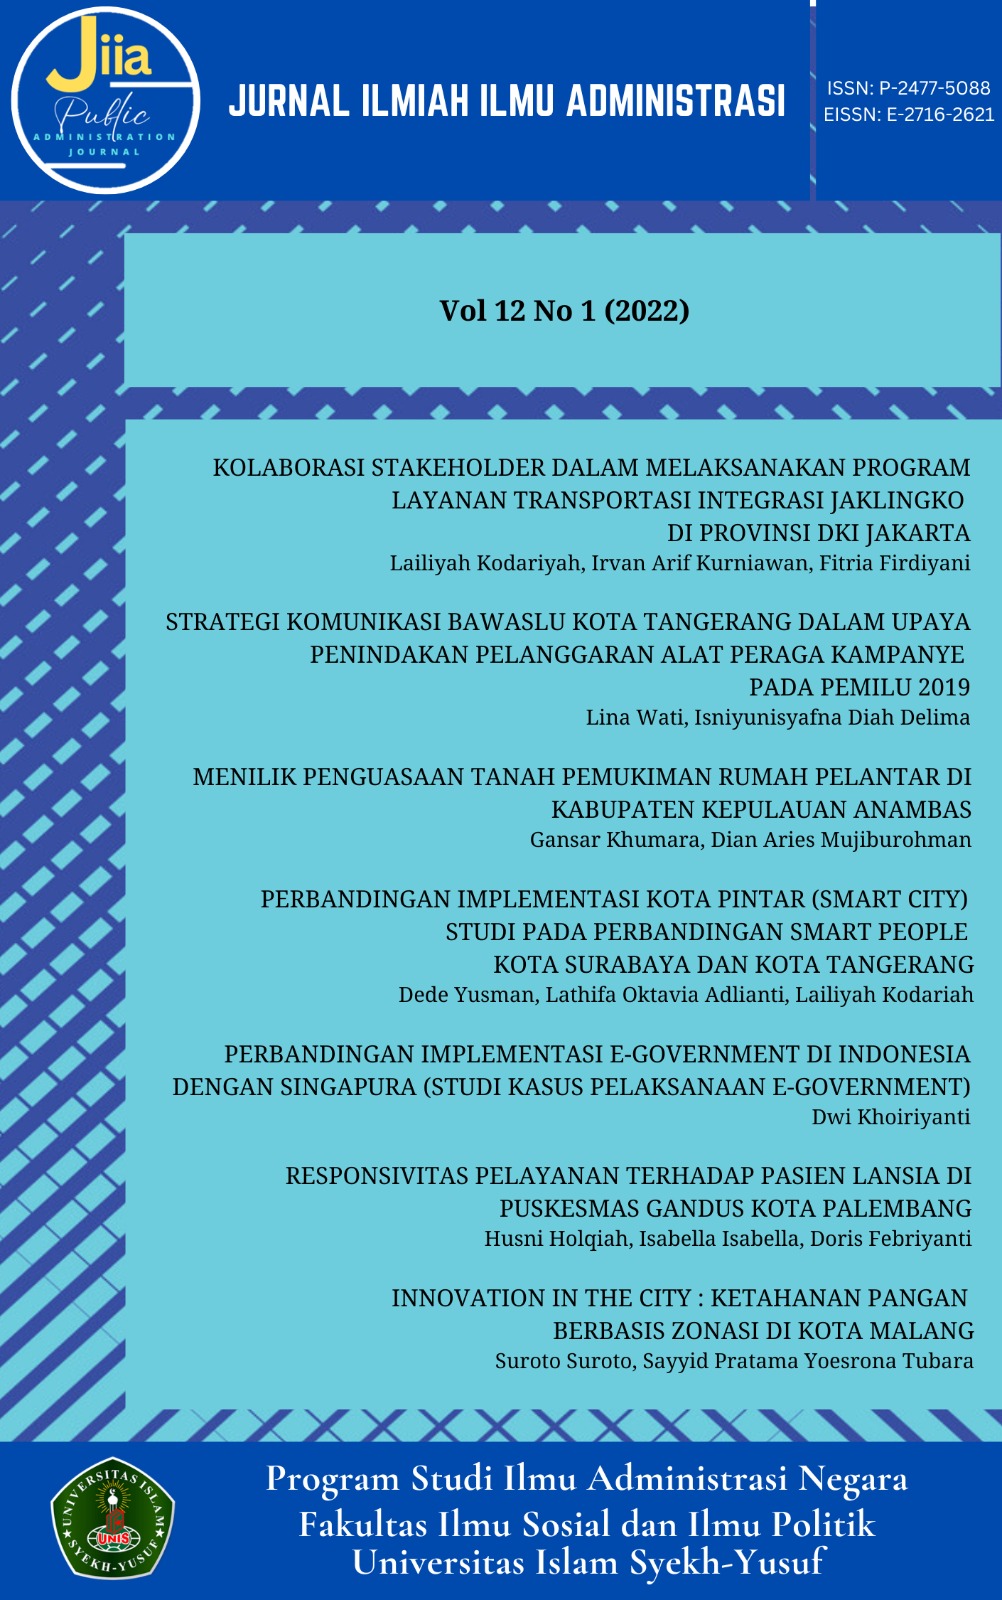 					Lihat Vol 12 No 1 (2022): Jurnal Ilmiah Ilmu Administrasi
				